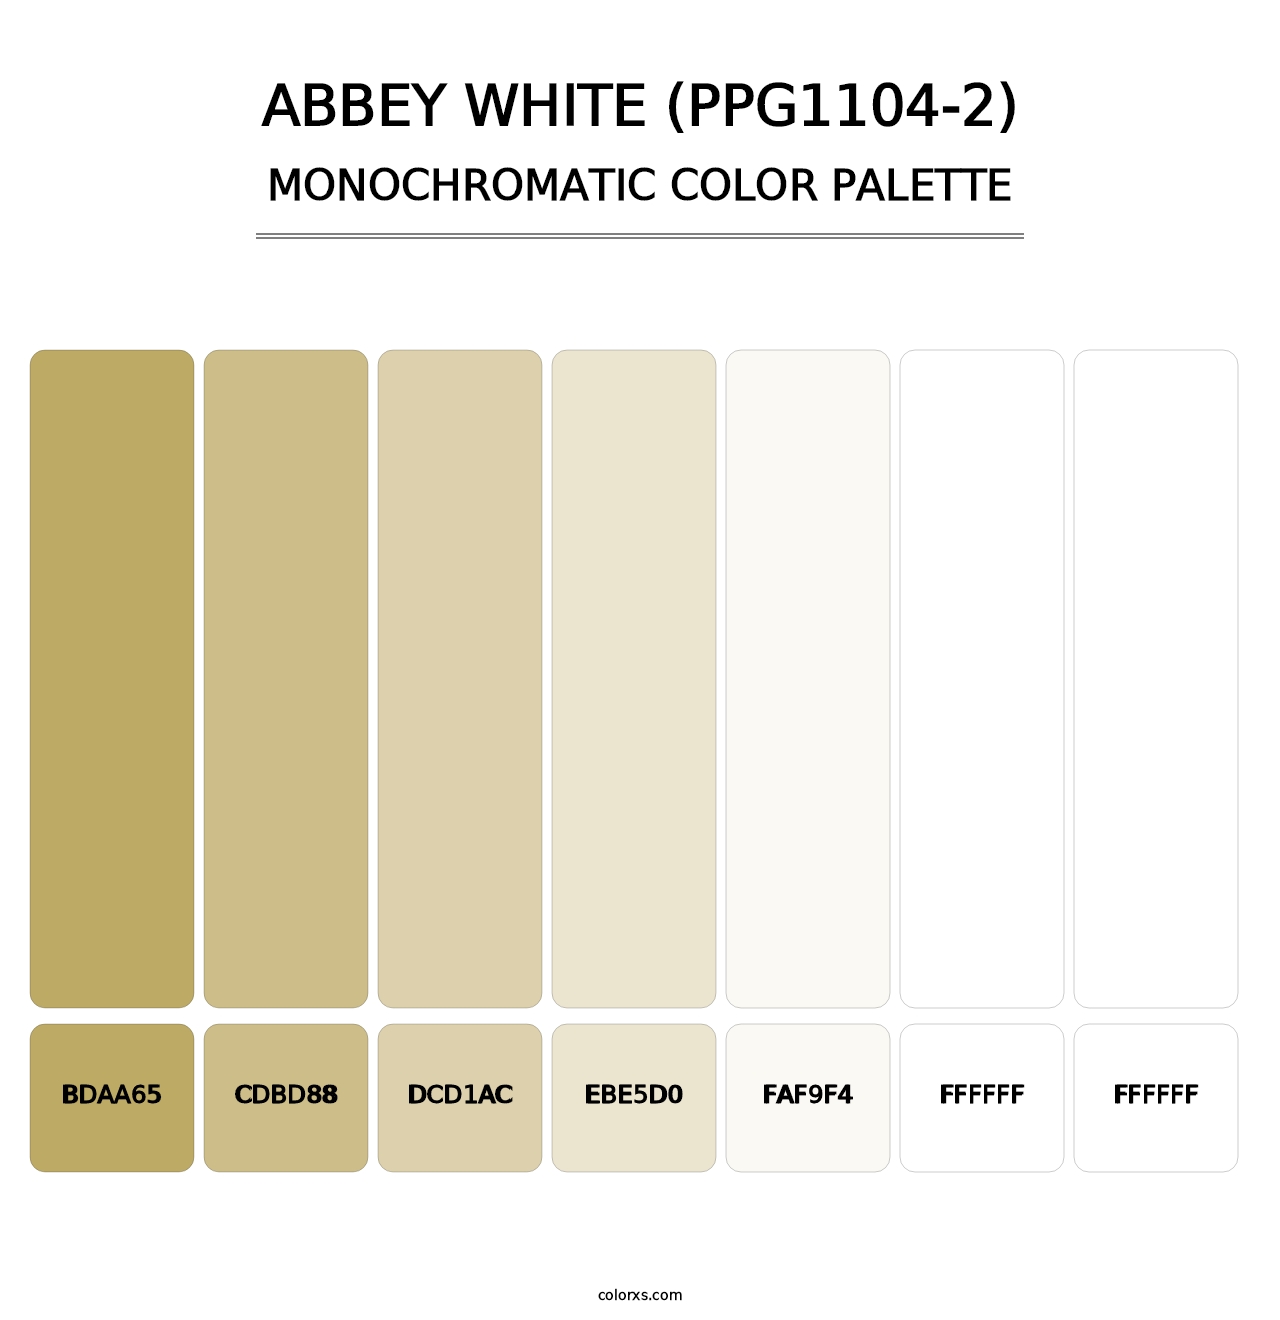 Abbey White (PPG1104-2) - Monochromatic Color Palette